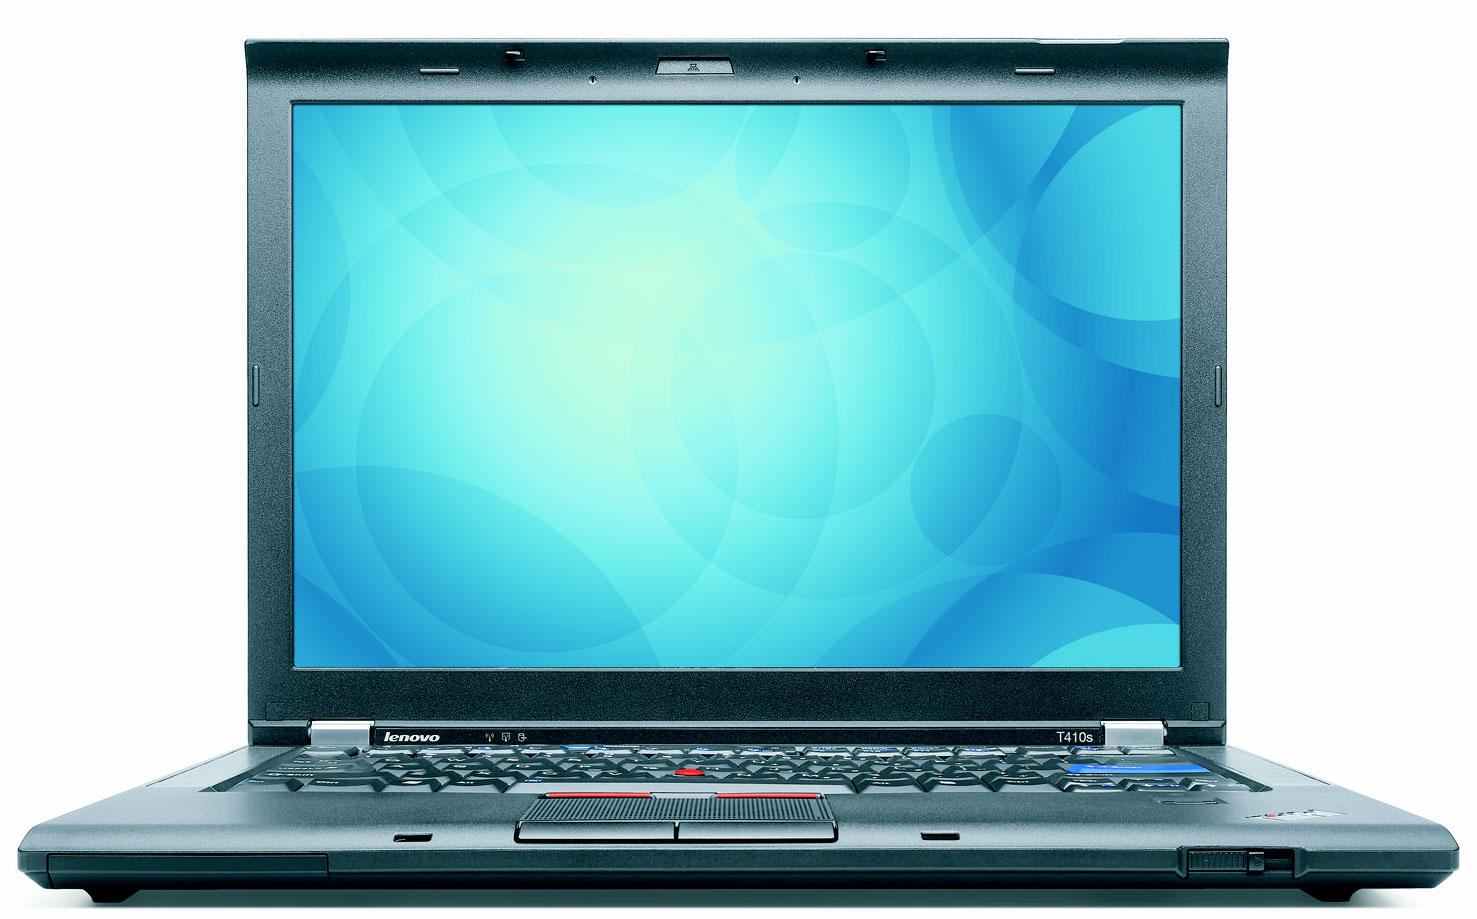 Lenovo ThinkPad T410 COR I5 2.4 EXCHANGE PC 25 OFF large image 0